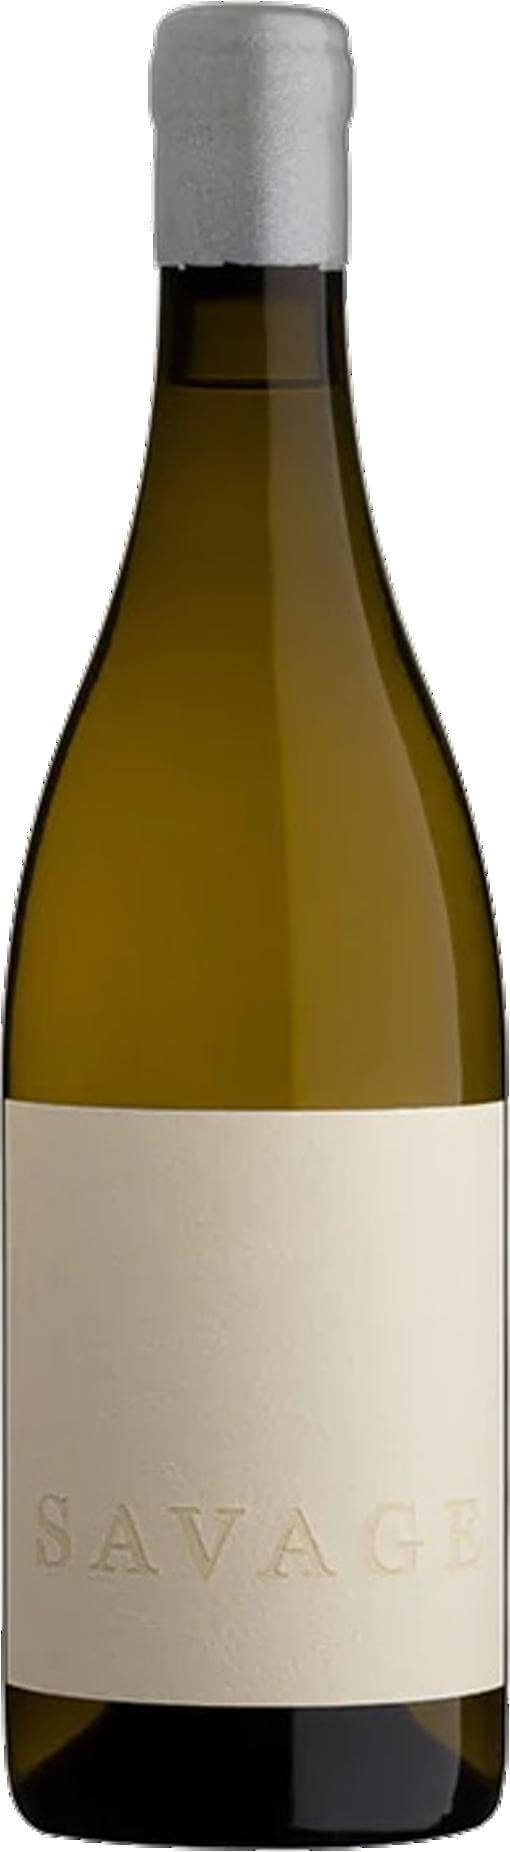 Savage White (Weißwein, Südafrika, Western Cape) | Südafrika Weinversand